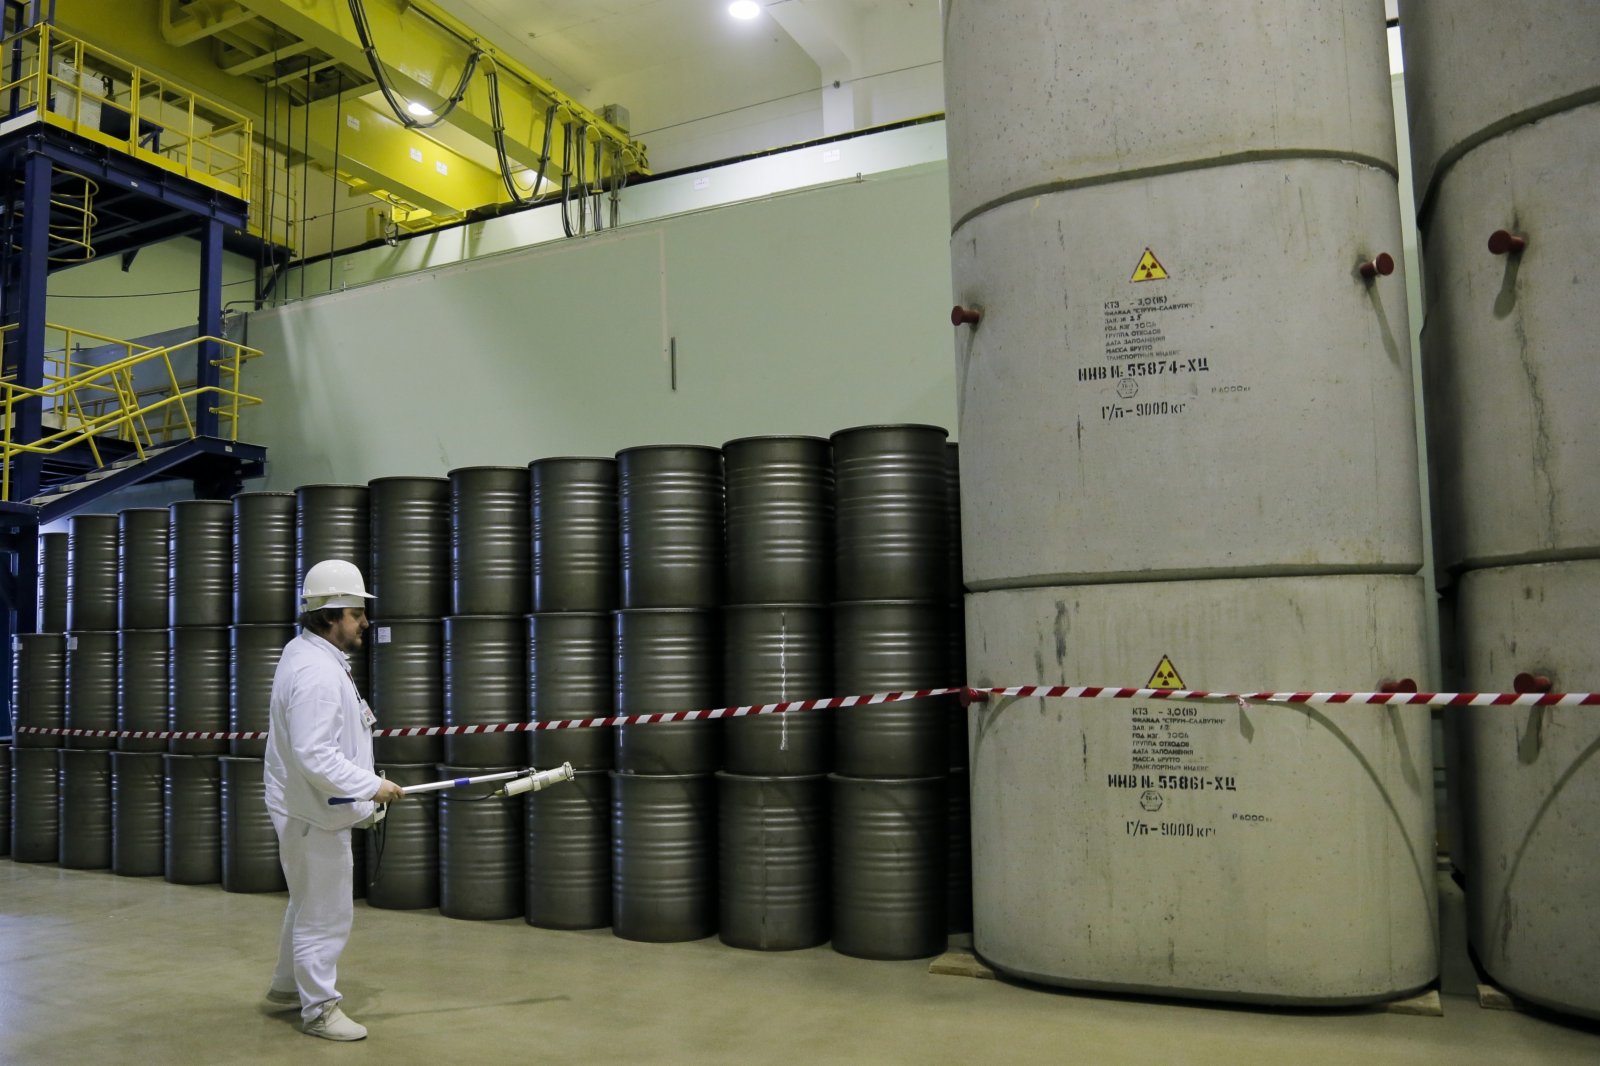 國際原子能機構正告稱扎波羅熱核電站清静形勢已经「残缺失控」